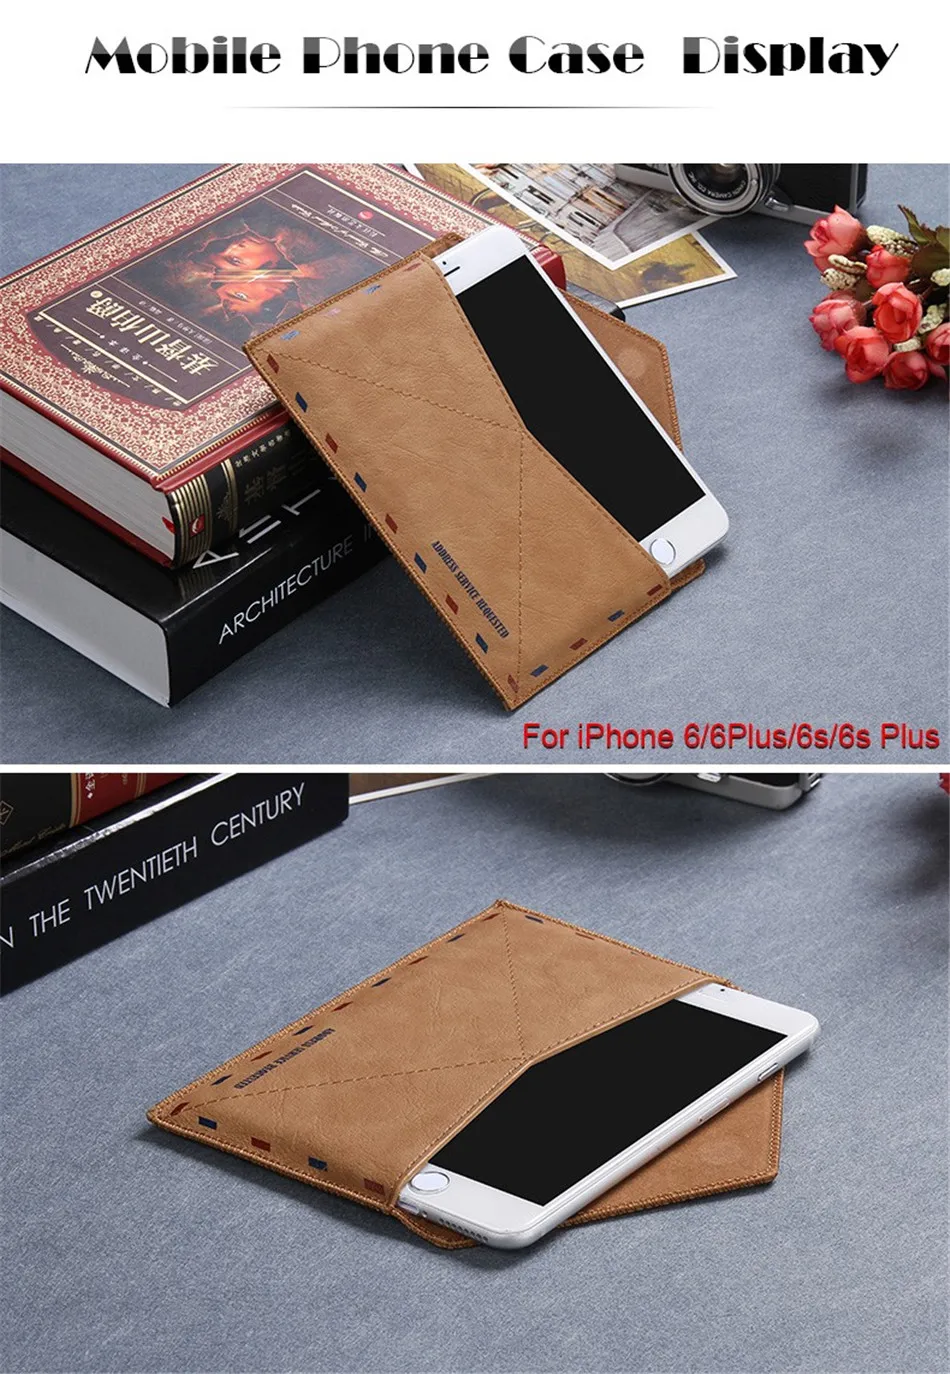 Рамочный чехол Nostalgi почты чехол для телефона для iPhone 8 7 6 6s 5 5 S SE конверт сумка чехол для телефона для samsung Galaxy S7 S5 S6 чехлы